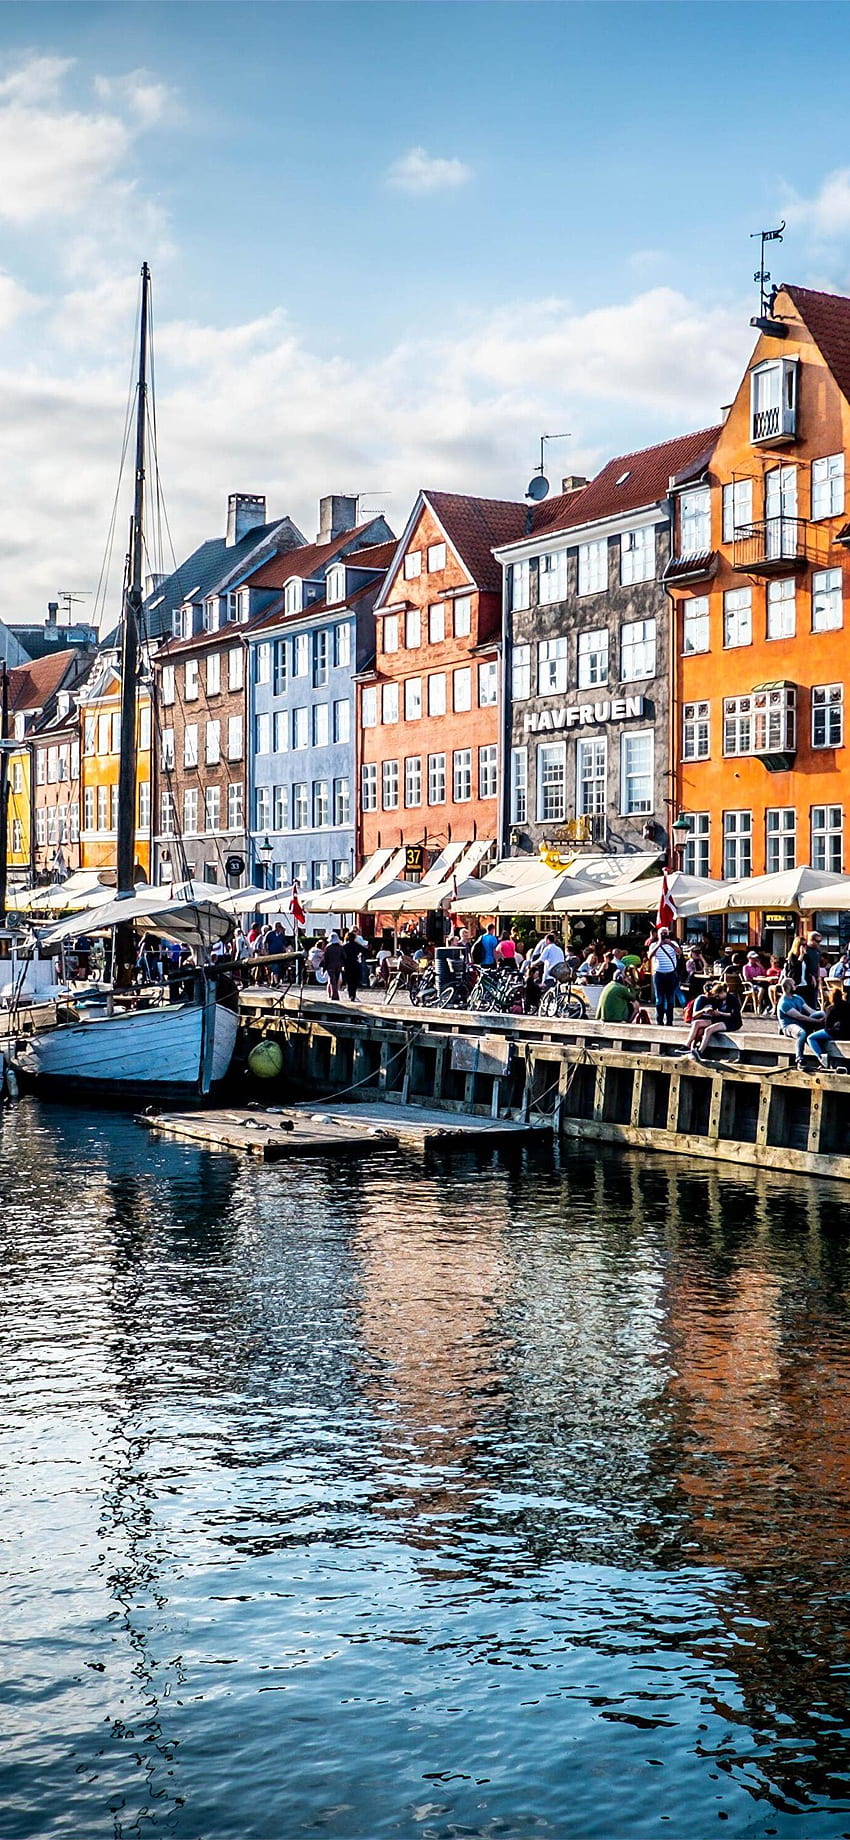 Insured Nomads – Copenhagen City Guide for Digital Nomads & Expats